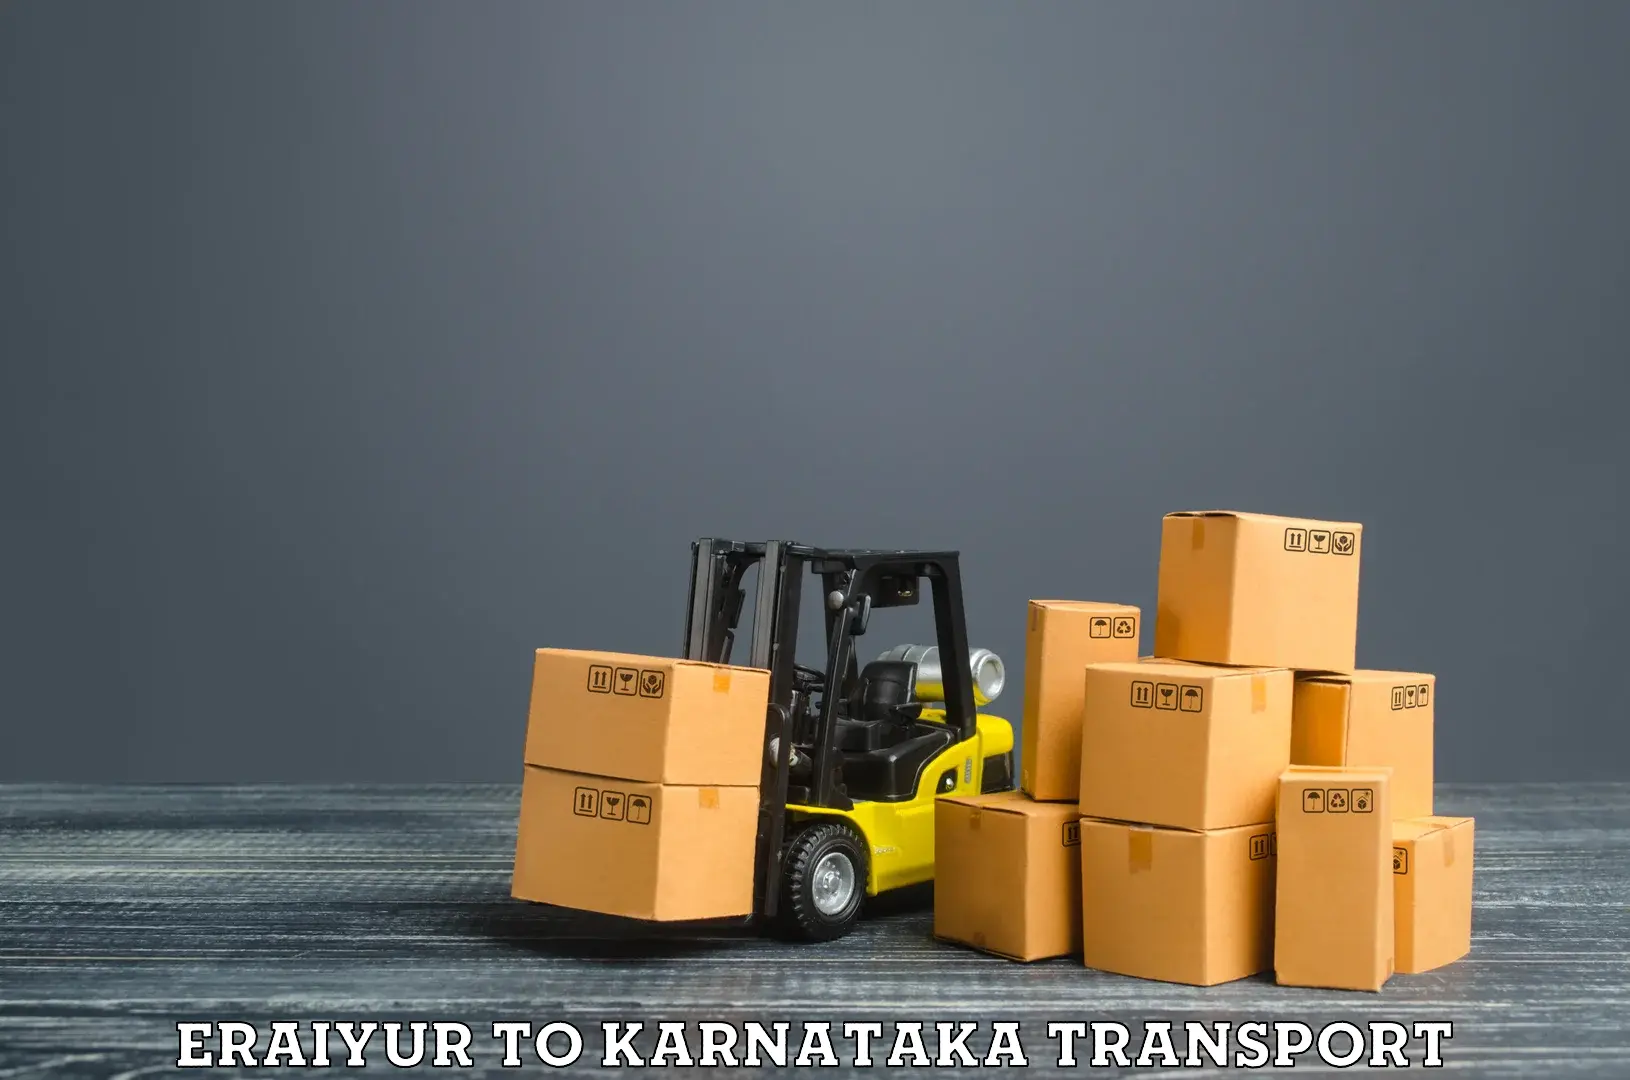 Goods delivery service Eraiyur to Jayanagar